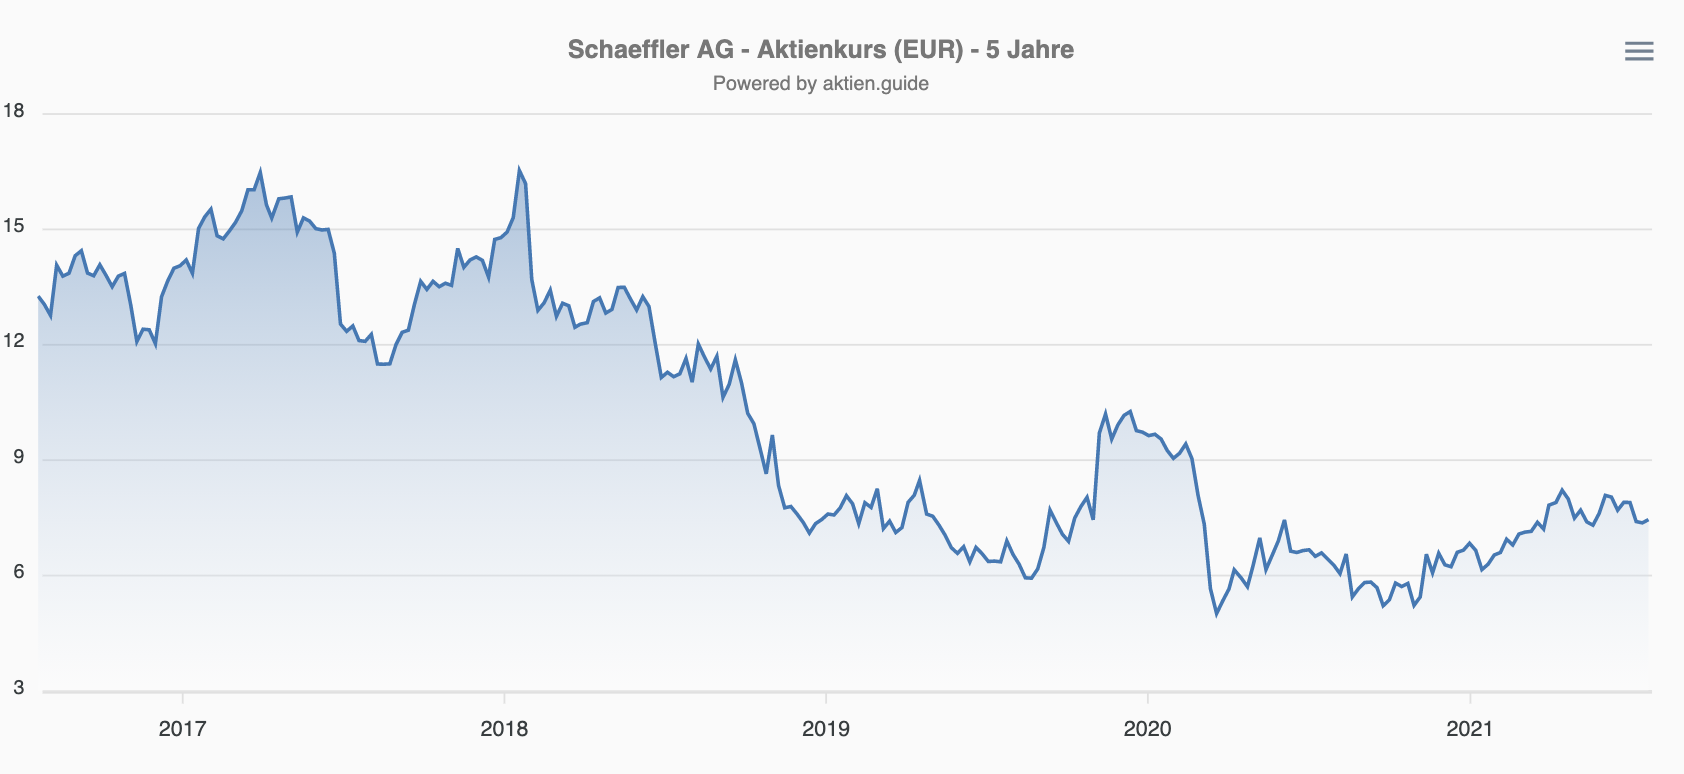 Schaeffler Aktie - Aktienkurs 5 Jahre